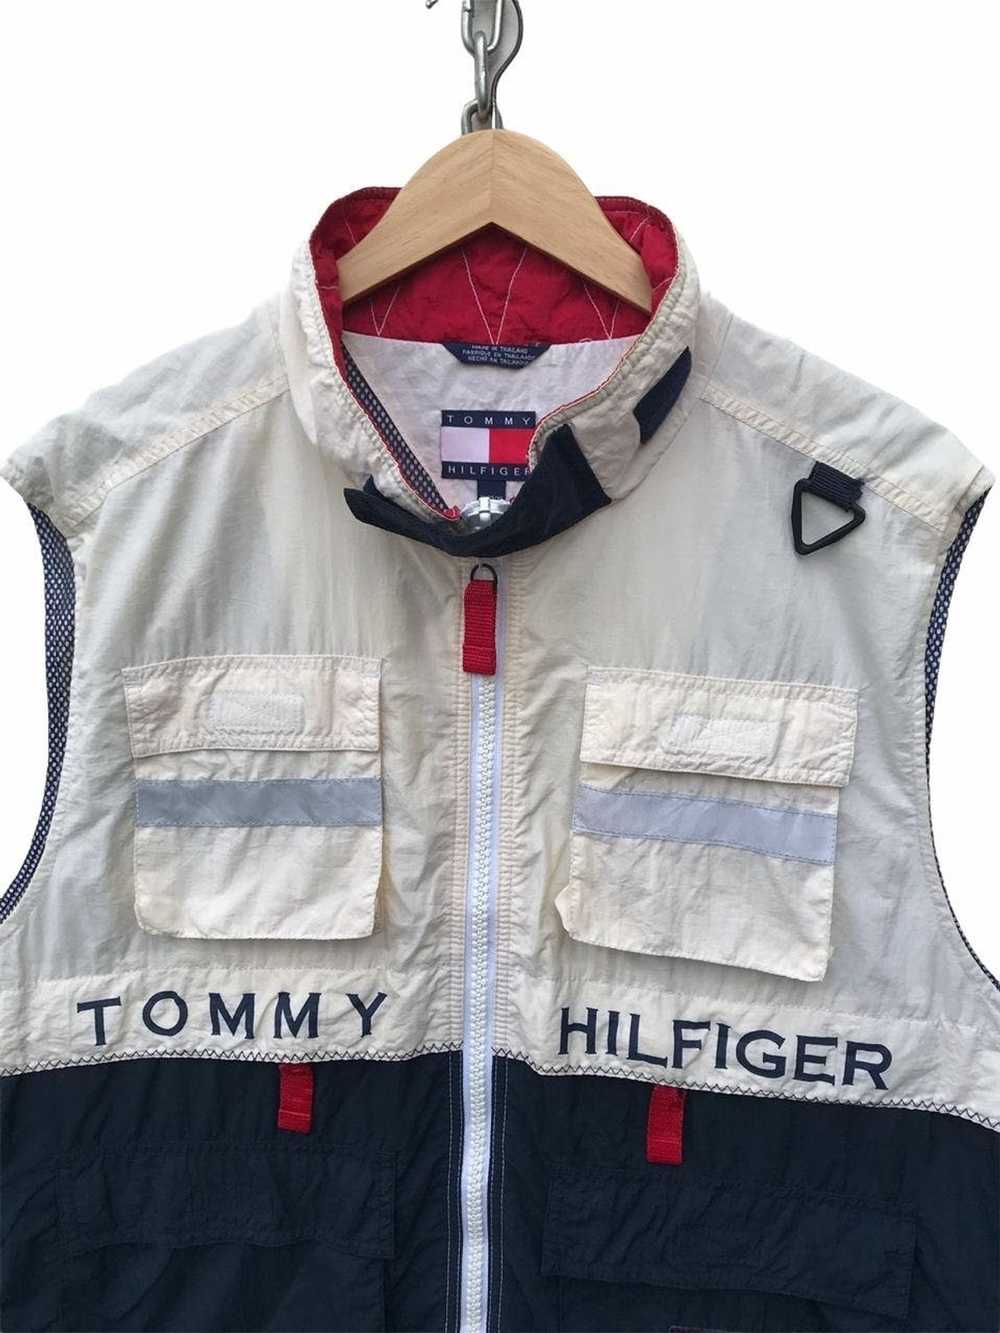 Tommy Hilfiger Tommy Hilfiger Sailing Gear Vest - image 4